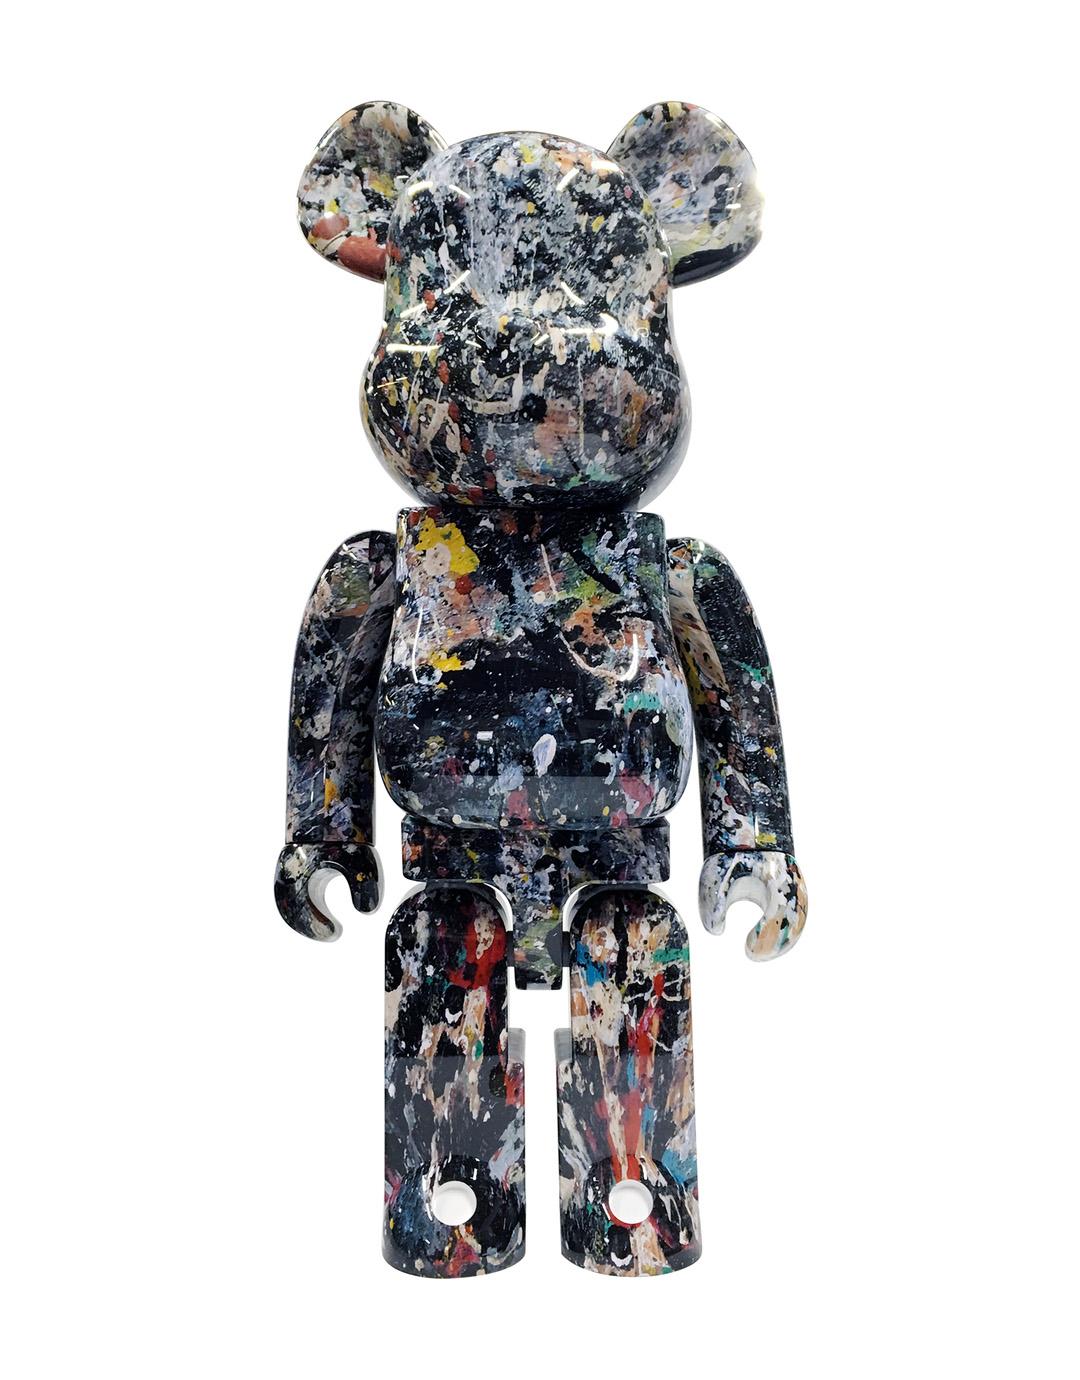 (after) Jackson Pollock  Figurative Sculpture - Jackson Pollock Bearbrick 1000% Companion (Jackson Pollock BE@RBRICK)